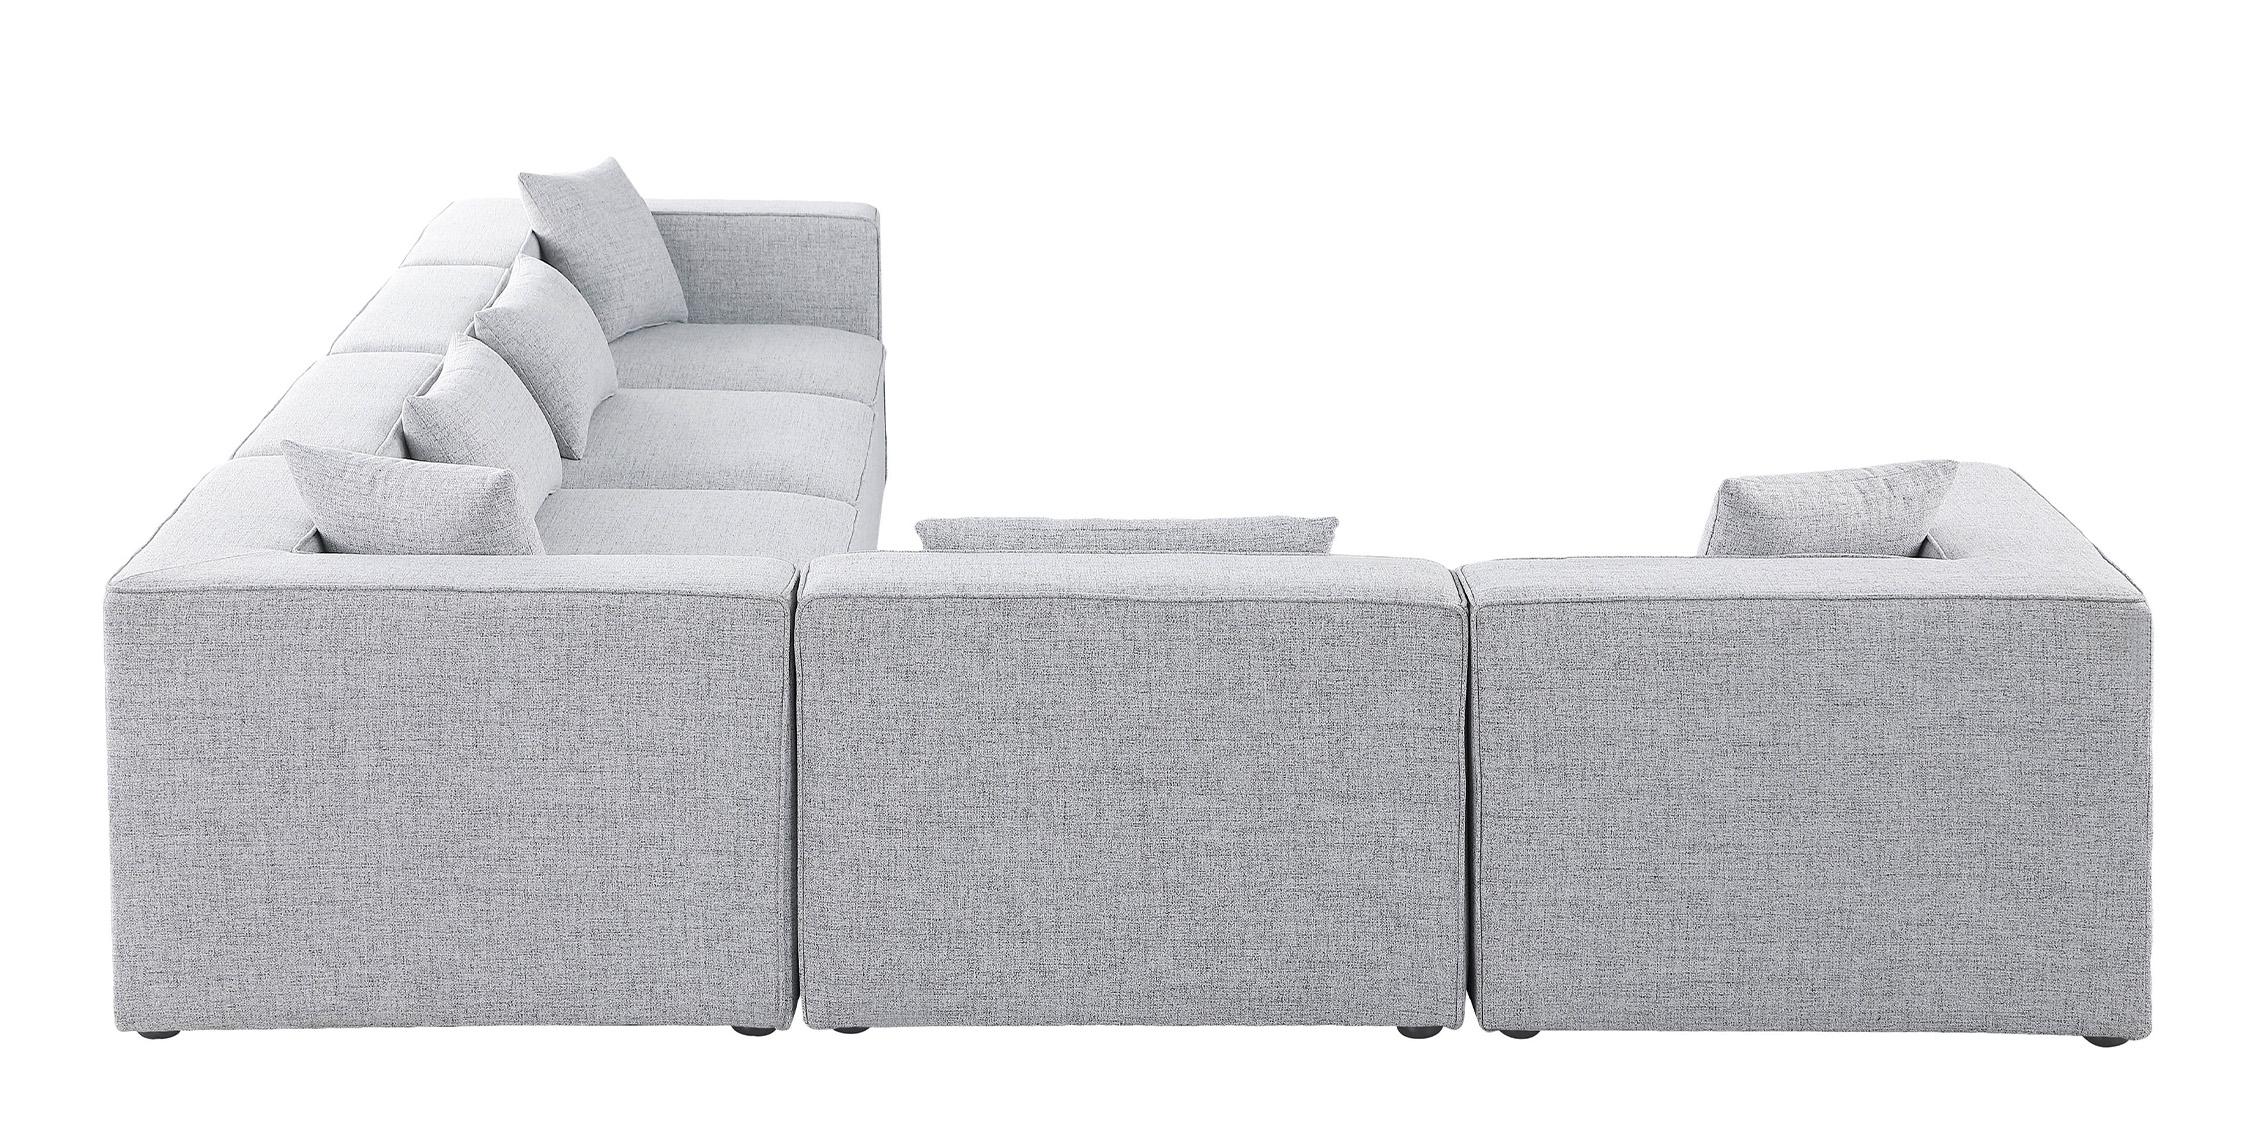 

    
630Grey-Sec6A Meridian Furniture Modular Sectional Sofa
